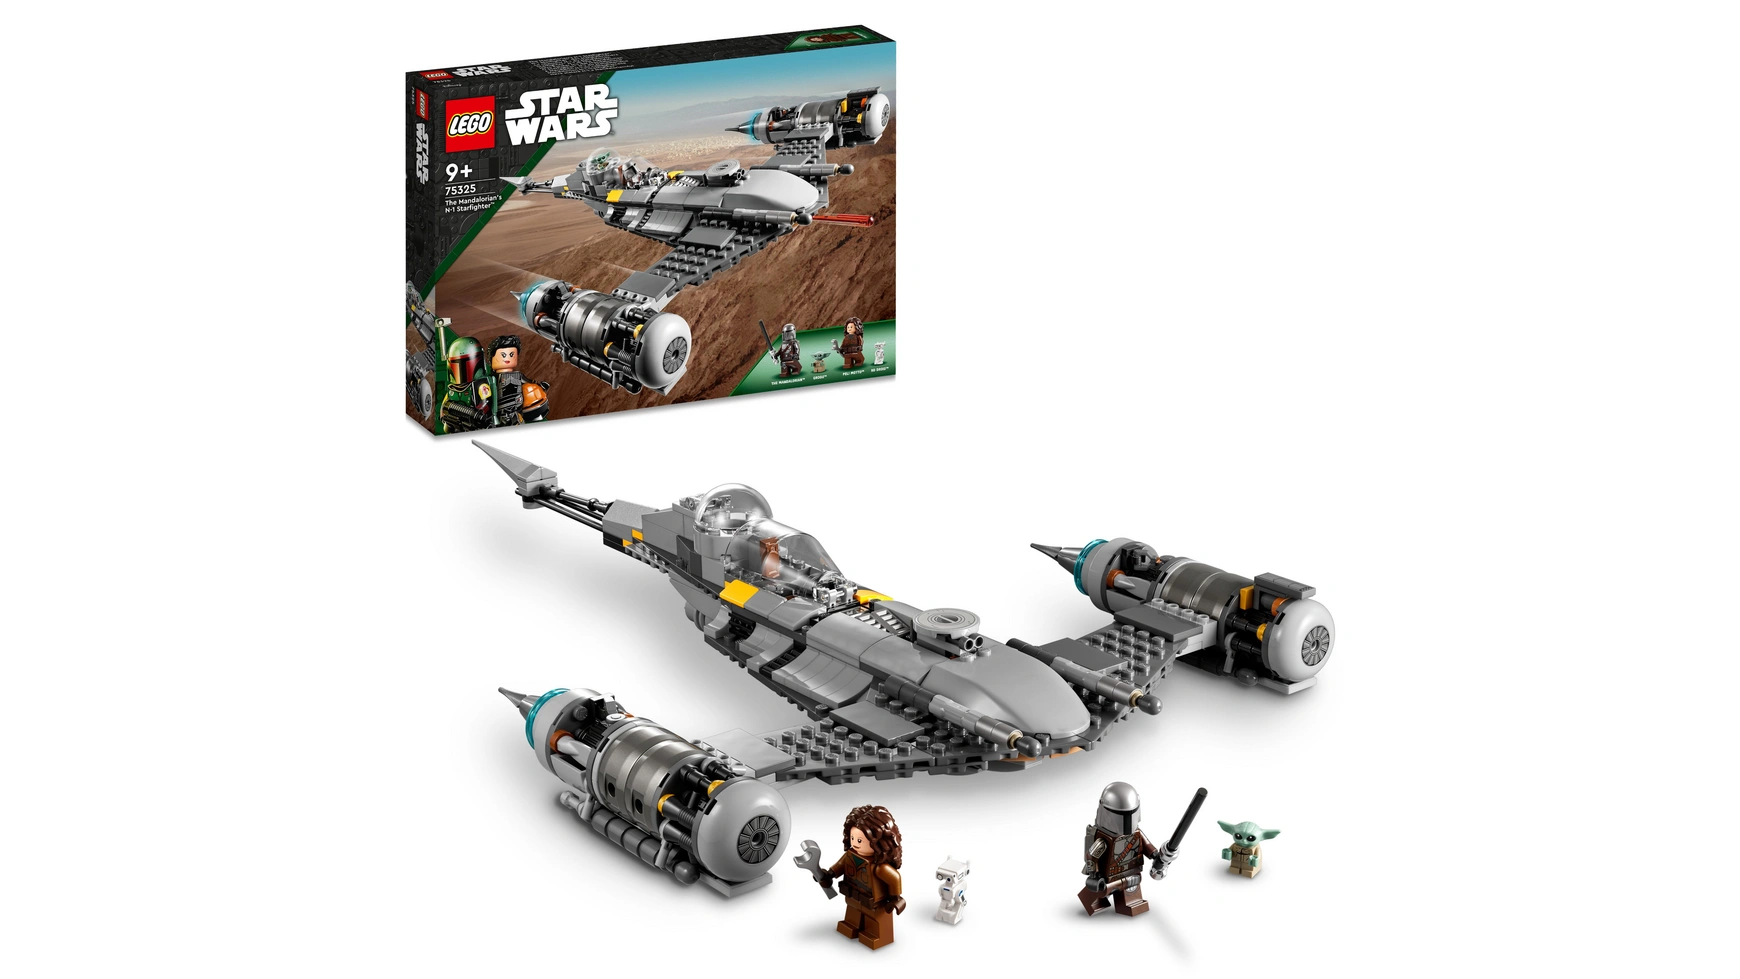 Lego Star Wars Набор Звездный истребитель Мандалорца Н-1 конструктор lego star wars шлем мандалорца 584 дет 75328